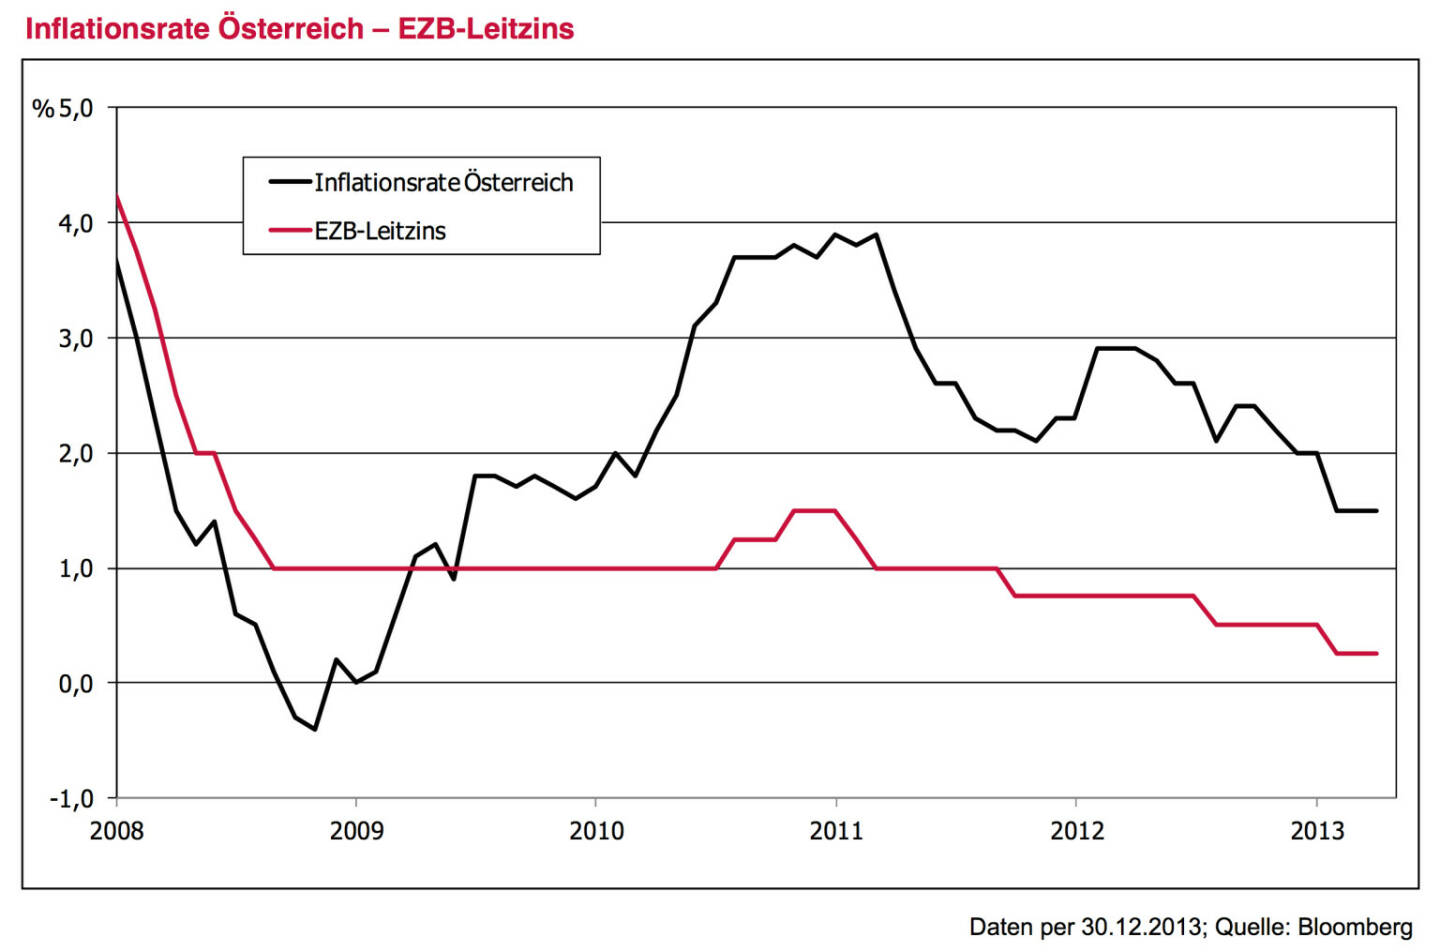 Leitplanke 2 - Ausgangssituation: Negativer Realzins bleibt uns weiter erhalten ￼. ￼Im EZB-Leitzins wird es 2014 wohl wenig Bewegung geben – und wenn doch, dann nach unten und nicht nach oben. Trotz zuletzt rückläufiger Inflationsraten bleibt daher die reale Rendite negativ. Anleger unterschätzen immer noch die mögliche Dauer der europäischen Tiefzinsphase. Egal ob FED, EZB, Bank of Eng- land oder Bank of Japan – man wird das solide, aber doch immer noch zarte Pflänzchen der Konjunkturerho- lung durch vorschnelle Maßnahmen sicher nicht gefähr- den. Was wäre denn die Option bei einem Rückfall der Wirtschaft in rezessive Tendenzen? Warten auf höhere Zinsen kostet daher letztendlich Geld. Dies gilt es bei jeder Geldanlageentscheidung zu berücksichtigen. Der sehnsüchtige Blick zurück auf die hohen Zinsen vergangener Jahre nützt nichts. Eine breite Anleihestrategie mit 3 % Renditepotential mag im historischen Kontext als wenig attraktiv erscheinen, aber im Vergleich zu einer reinen Cash-Veranlagung stellt sie doch einen attraktiven Mehrwert dar.